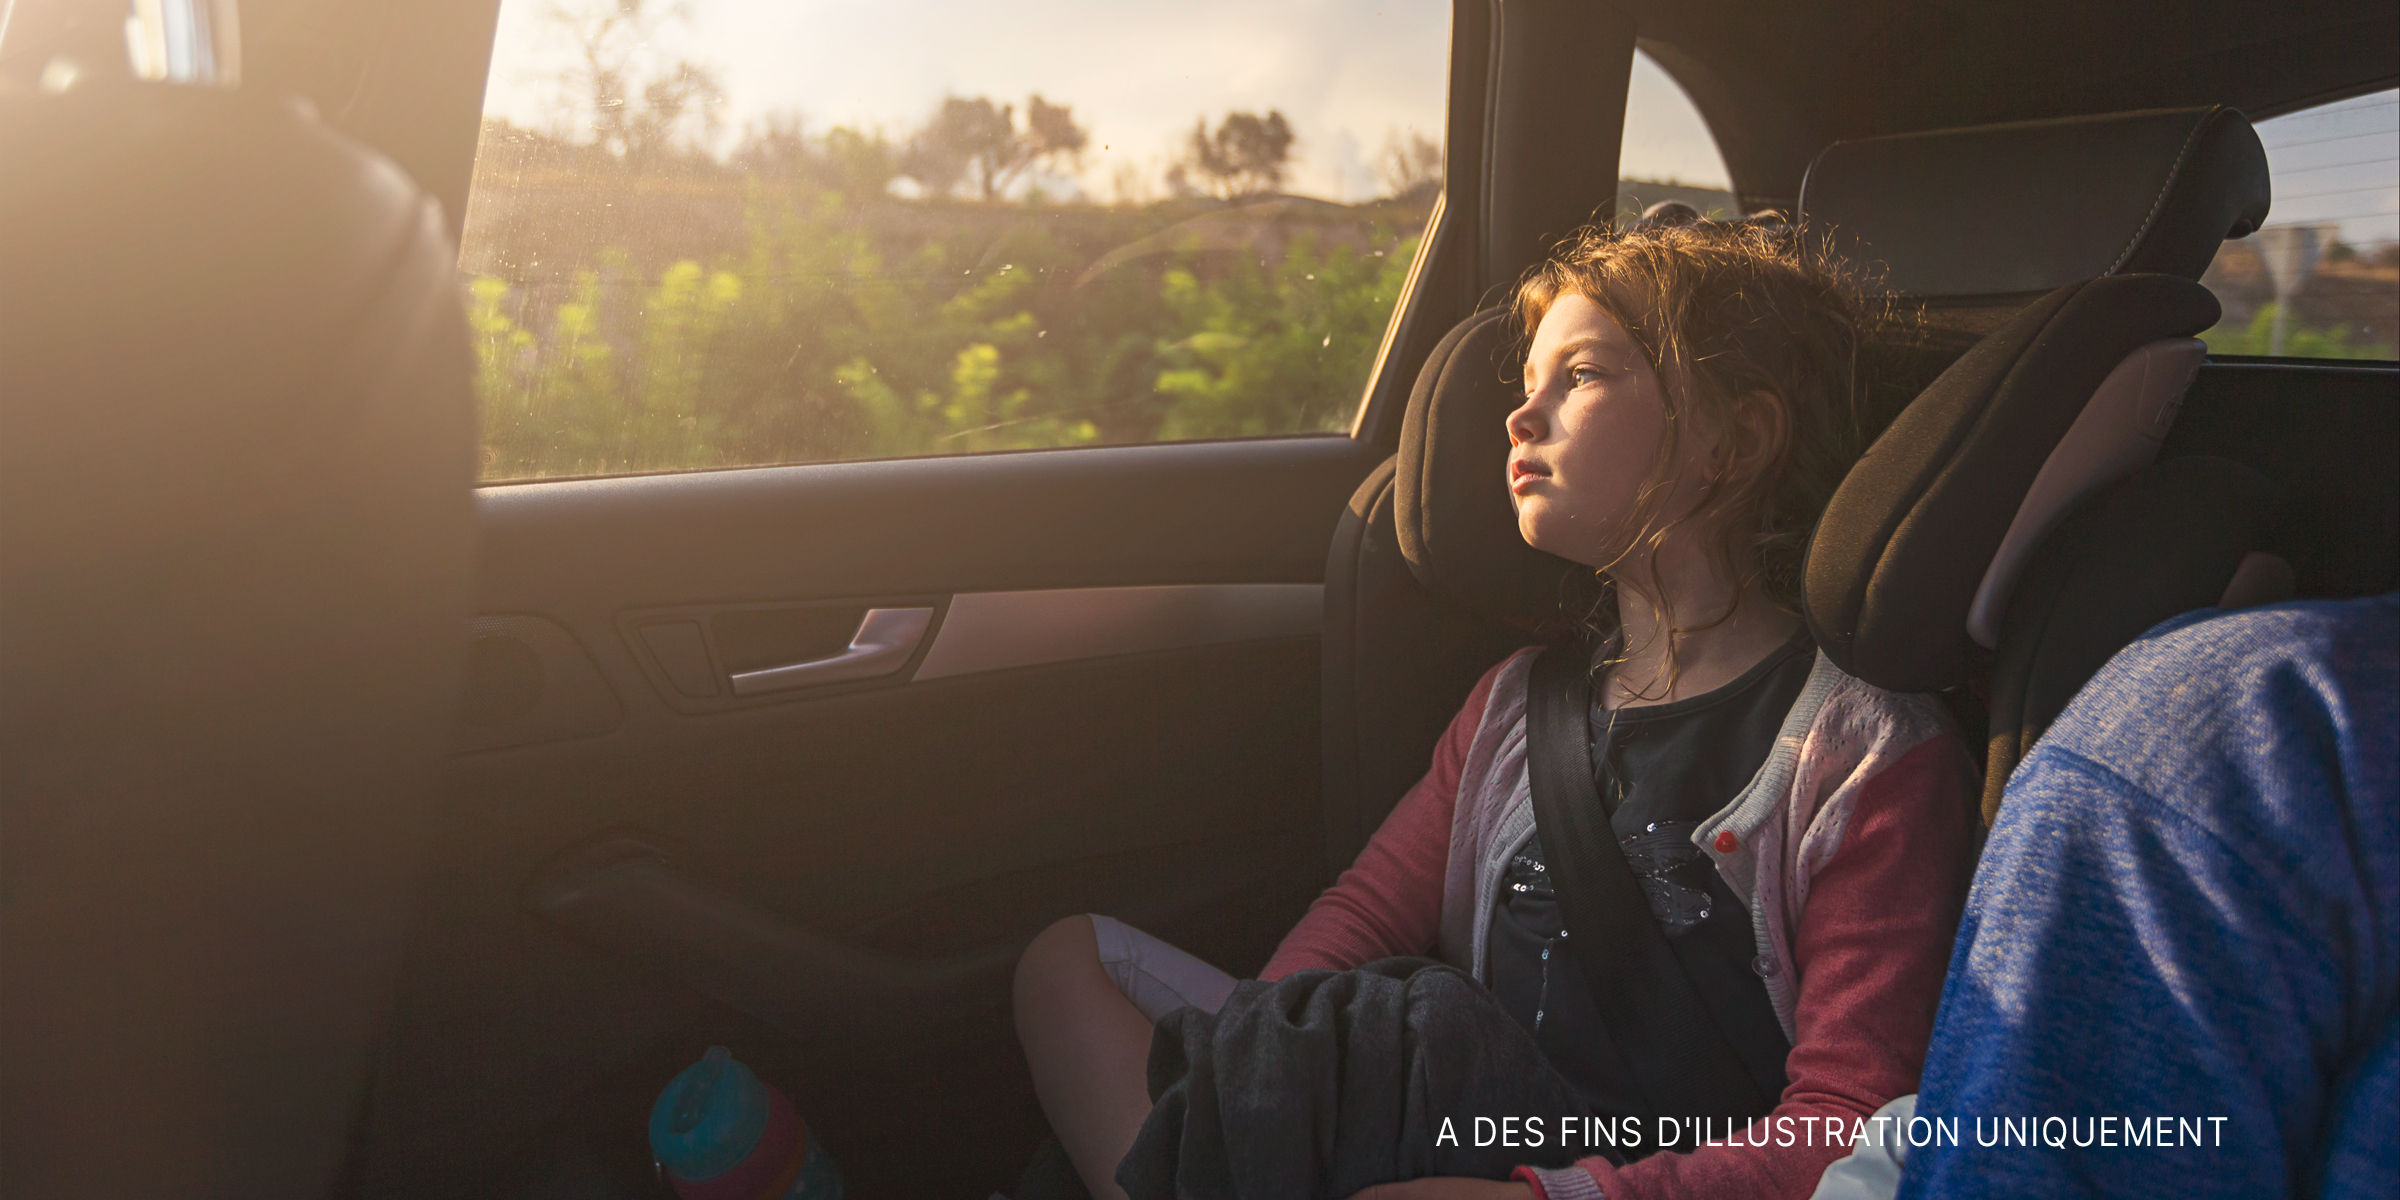 Jeune fille regardant par la fenêtre d'une voiture | Source : Getty Images